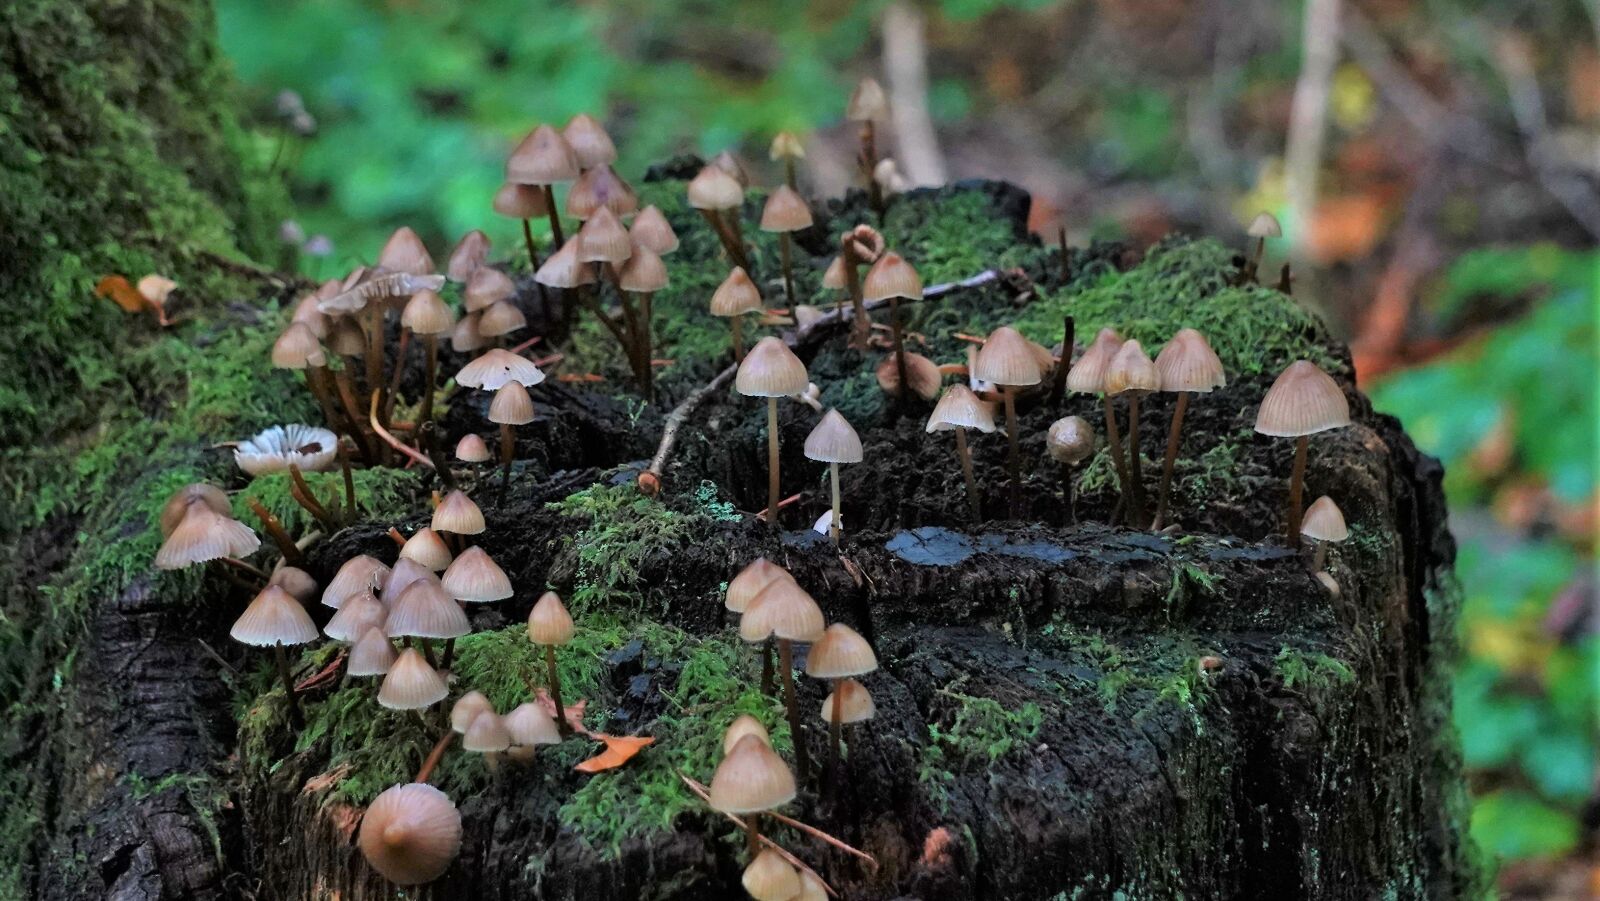 Sony a7 III + Sony E 55-210mm F4.5-6.3 OSS sample photo. Mushrooms, toadstools, fungi photography